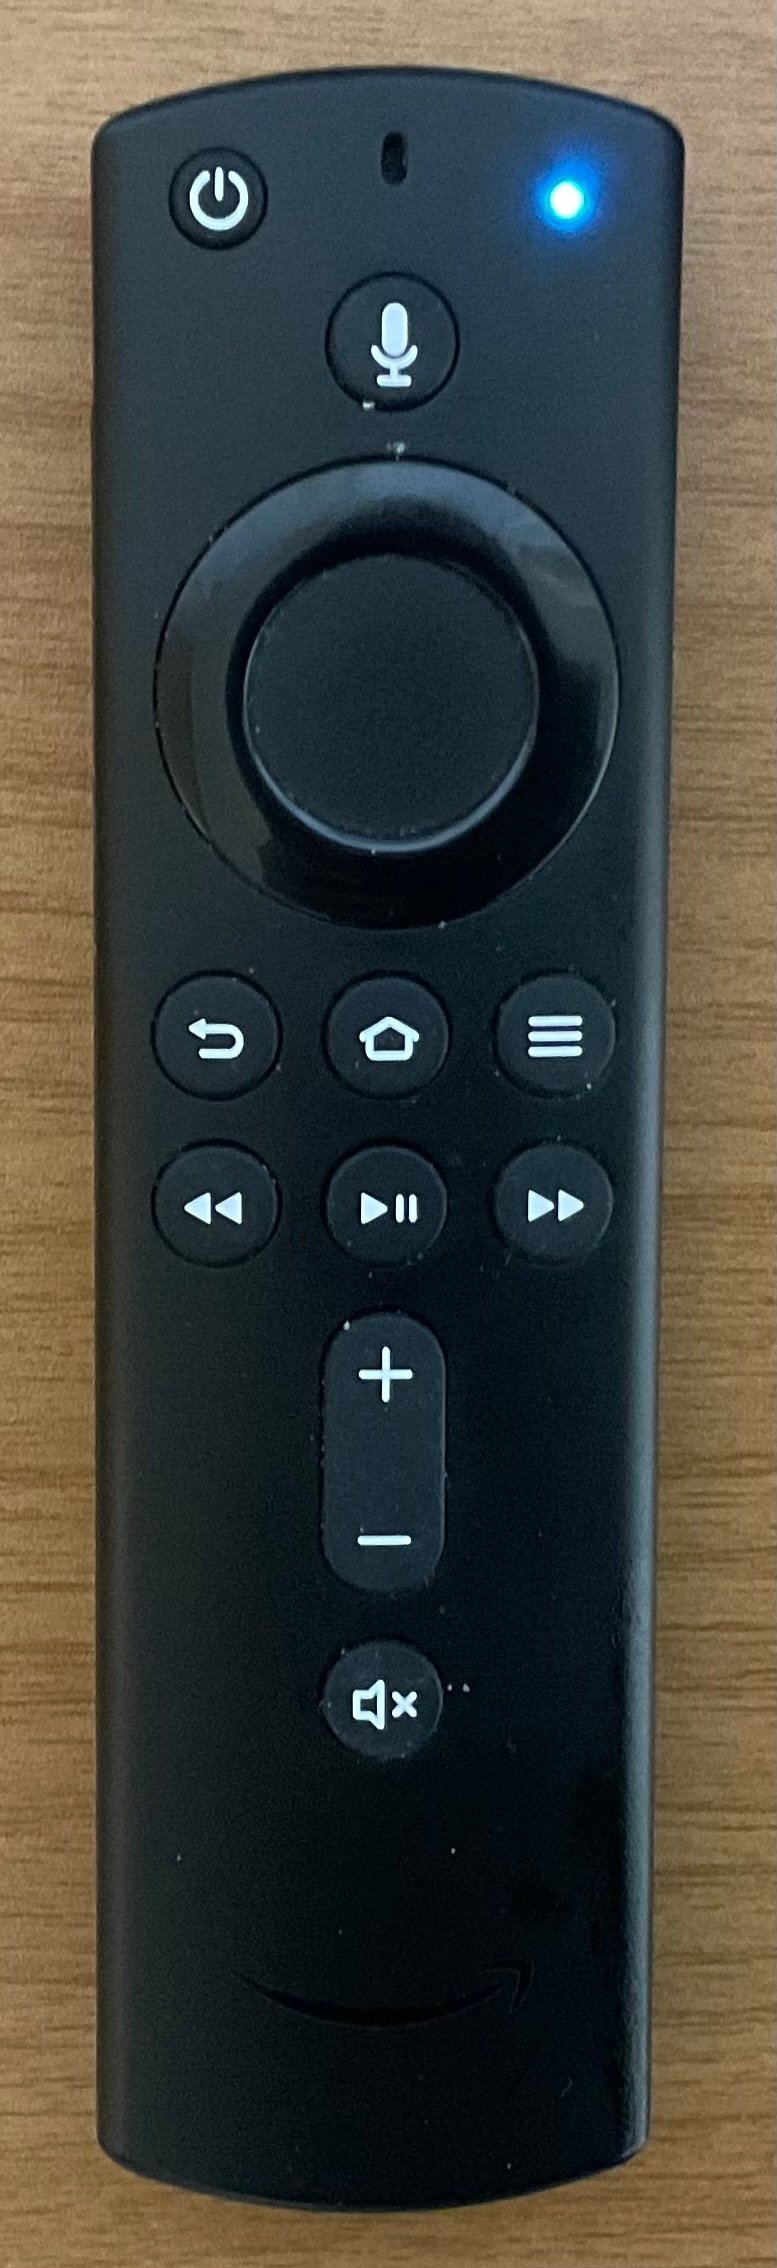 FireTVStickのマイクボタンを押すと、ピカッと右上が青く光るようになっている。